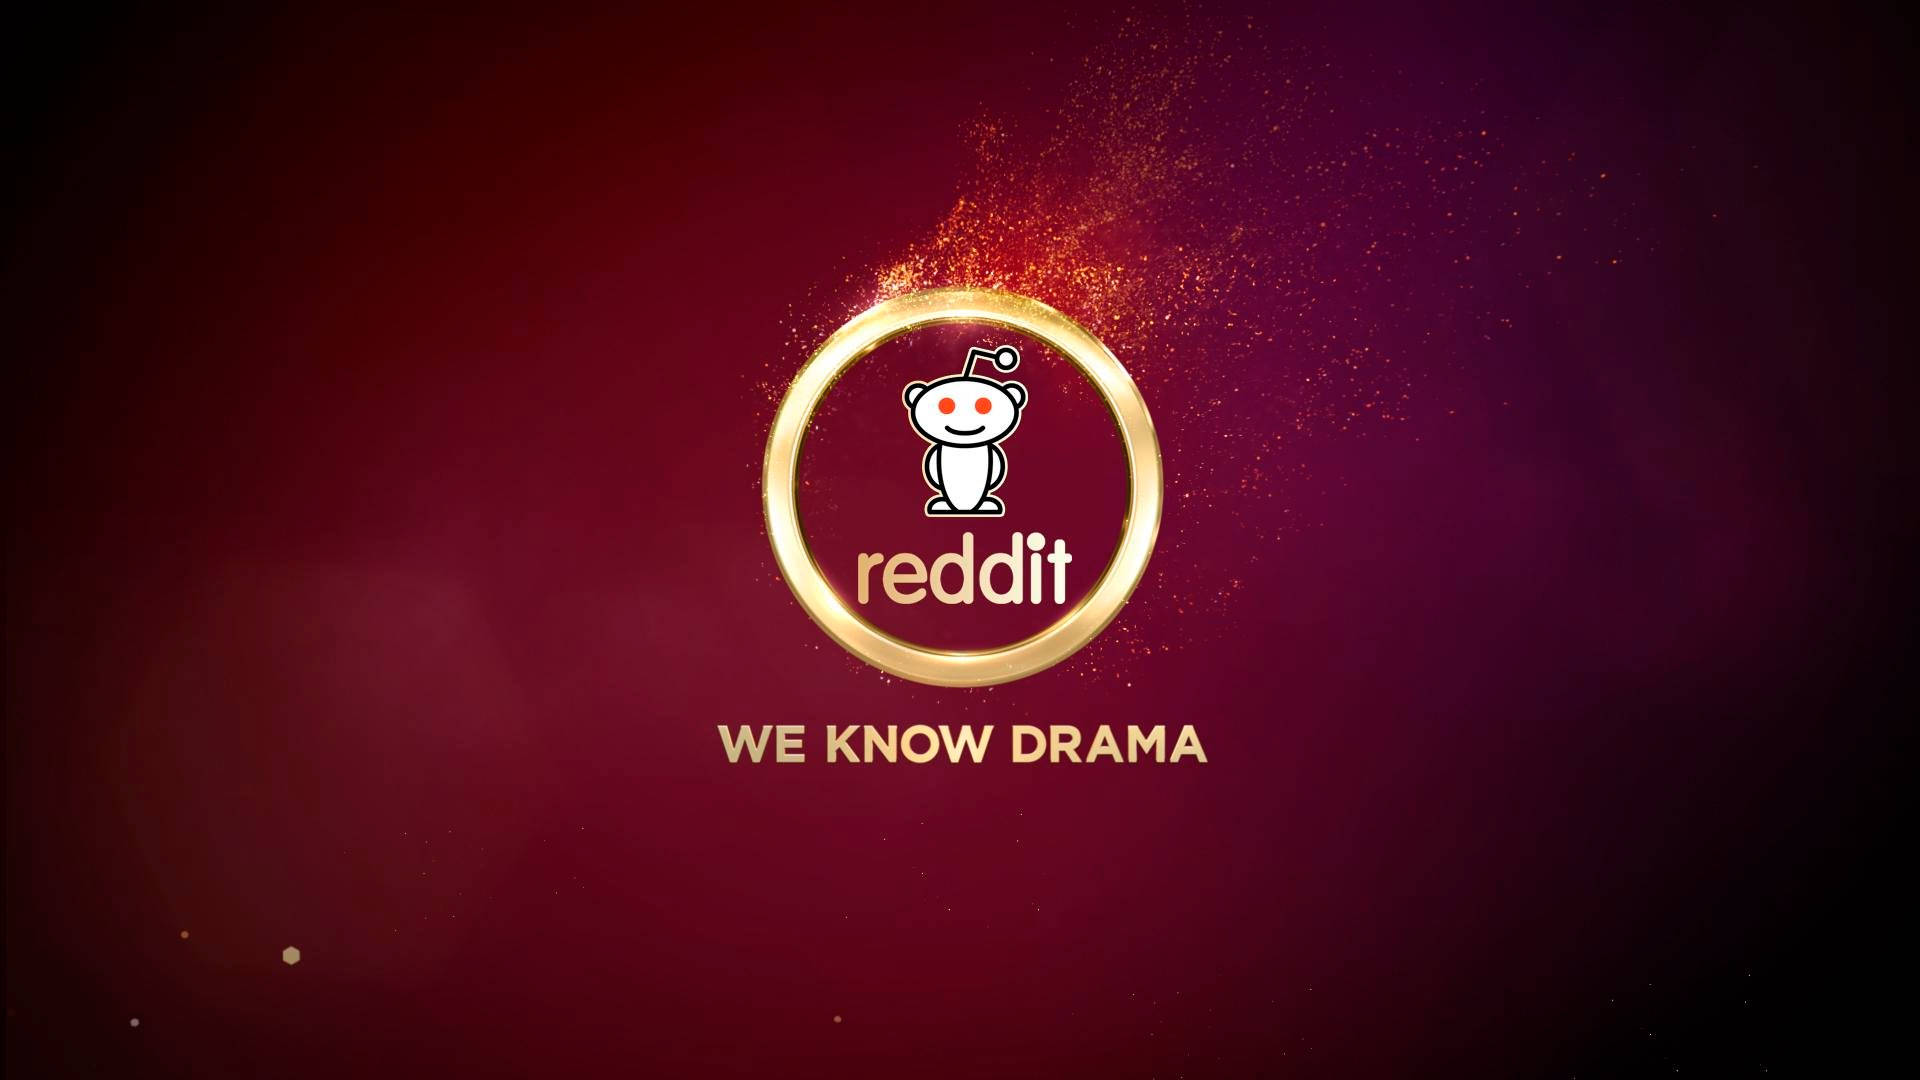 We Know Drama Reddit Wallpaper